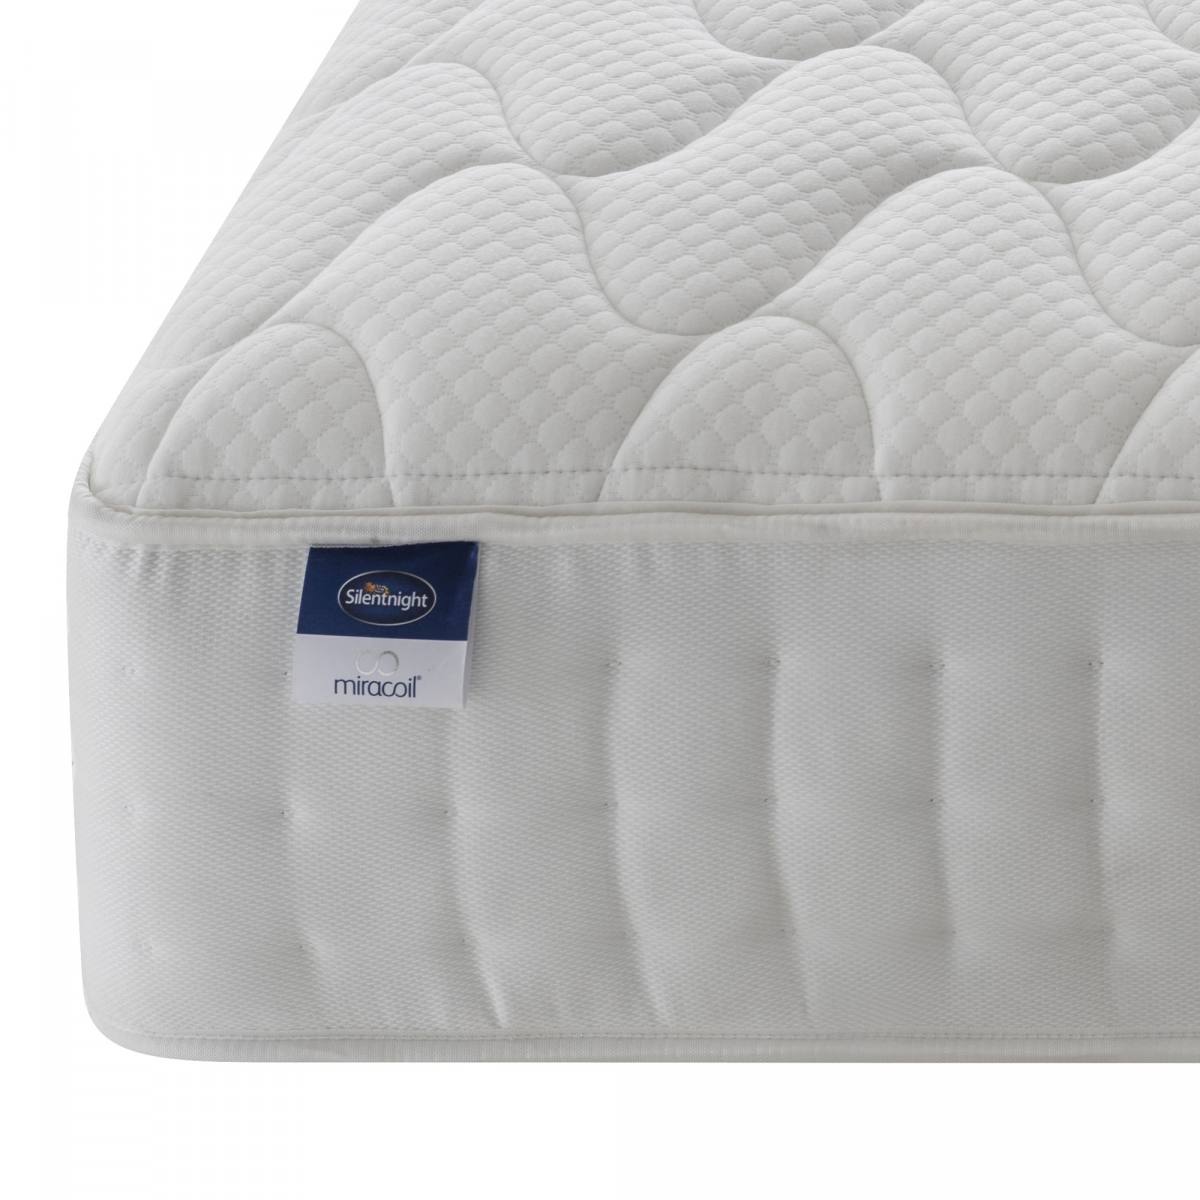 Miracoil latex mattress